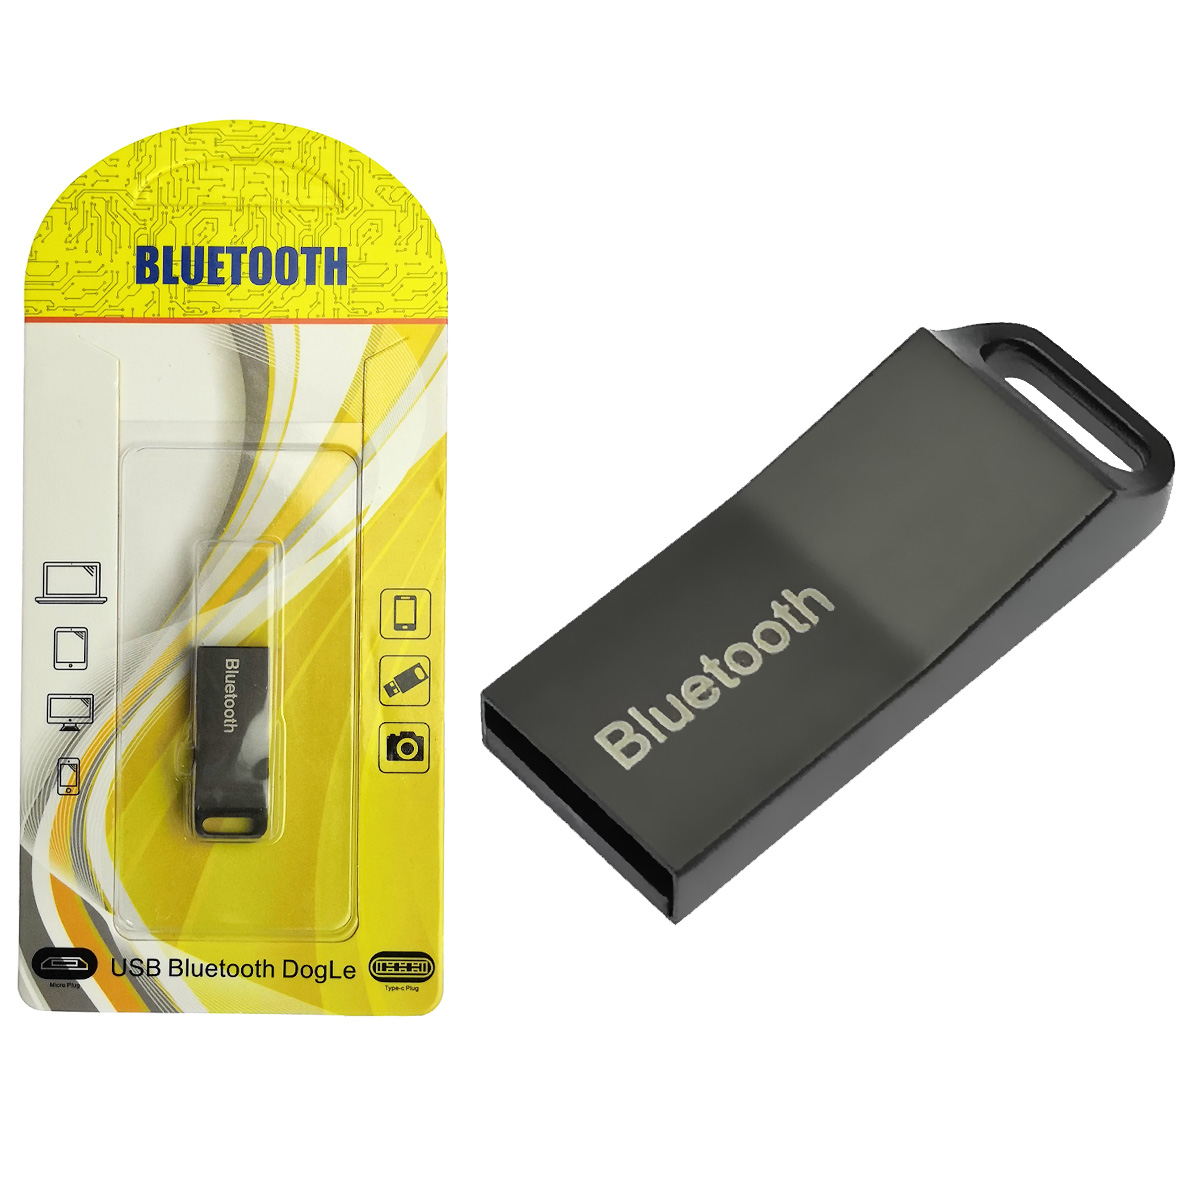 USB 2.0 Bluetooth адаптер 4.0+ERD, с поддержкой протоколов A2DP, AVRCP, HFP и HSP, радиус действия 8-10 метров, цвет черный